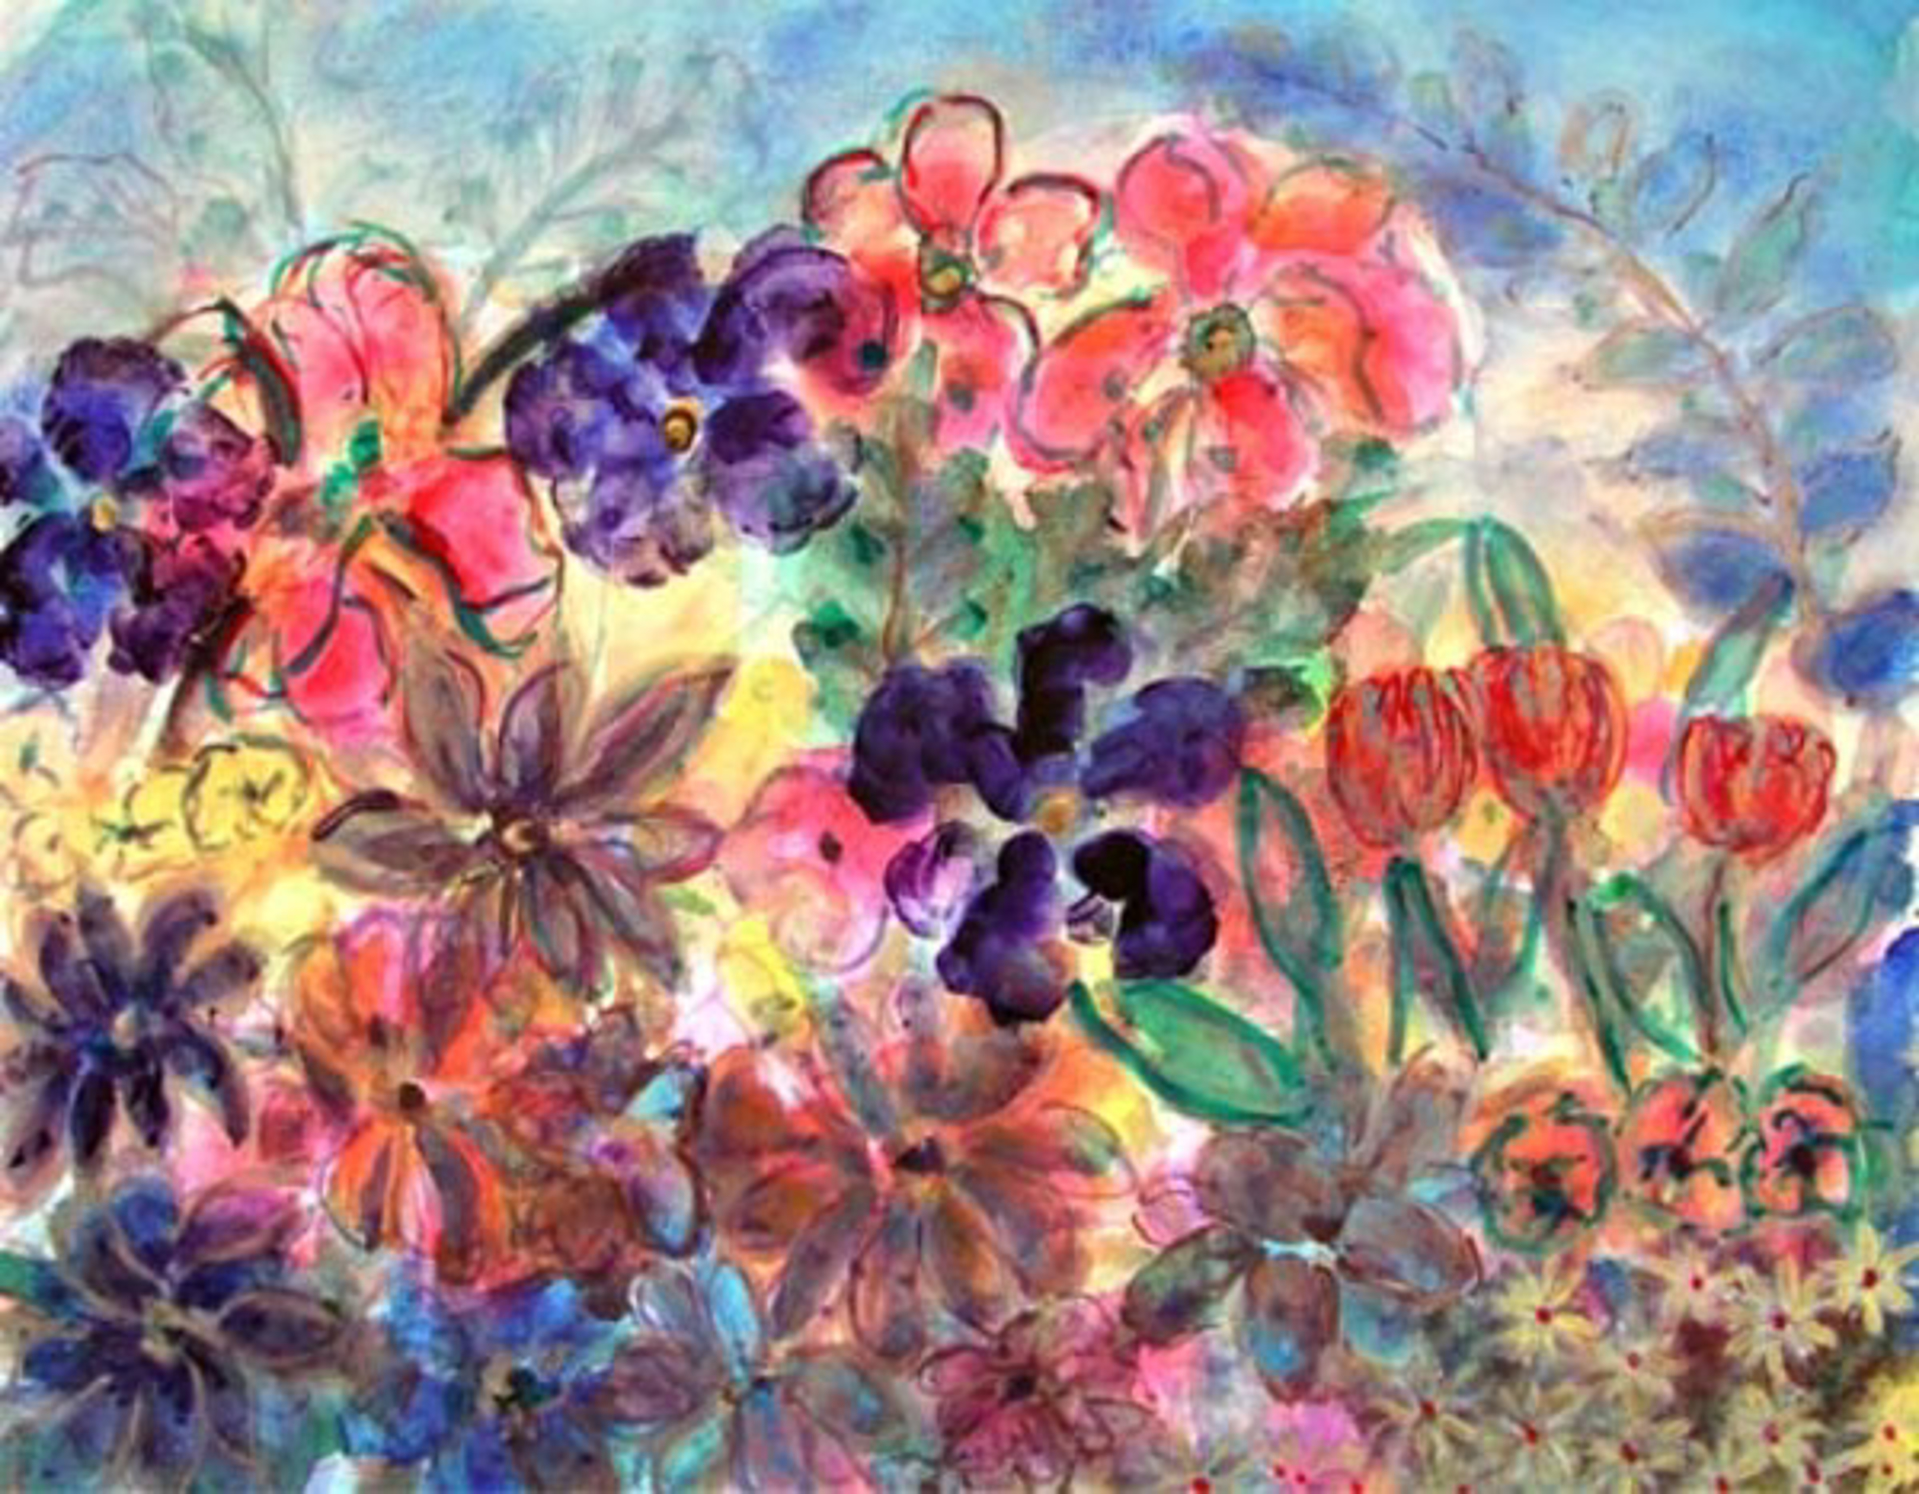 Floral Fantasy by David Barnett